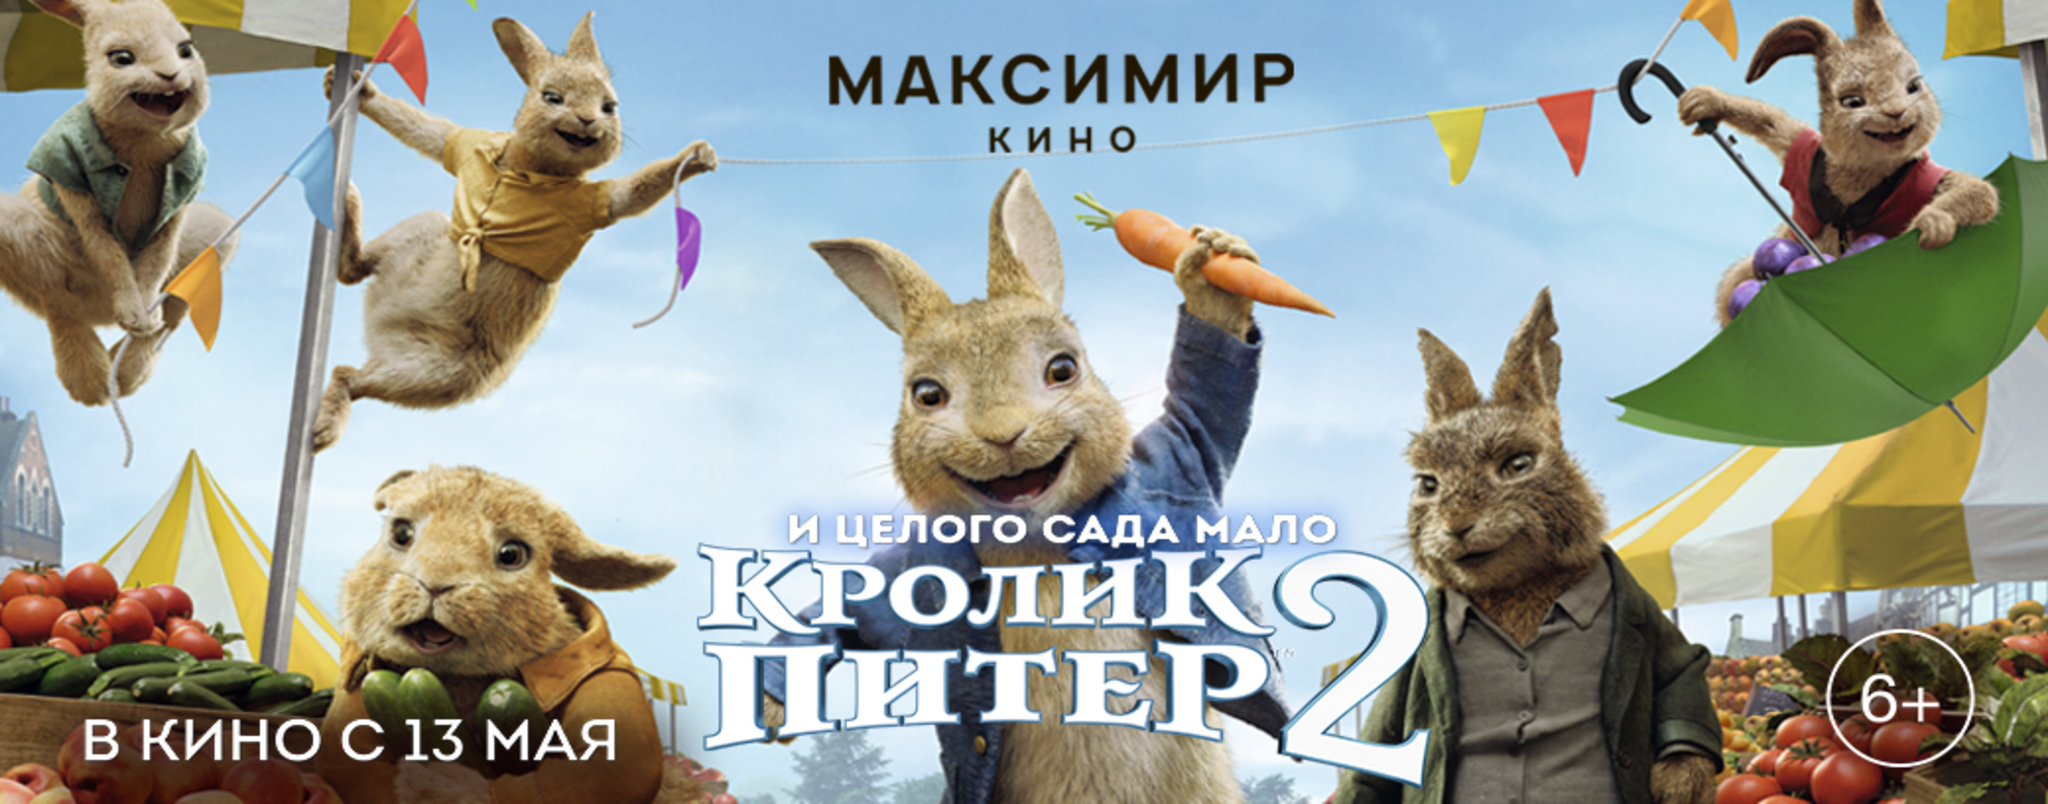 Кинотеатр воронеж максимир расписание сеансов на сегодня. Кролик Питер 2 (2020) Постер.